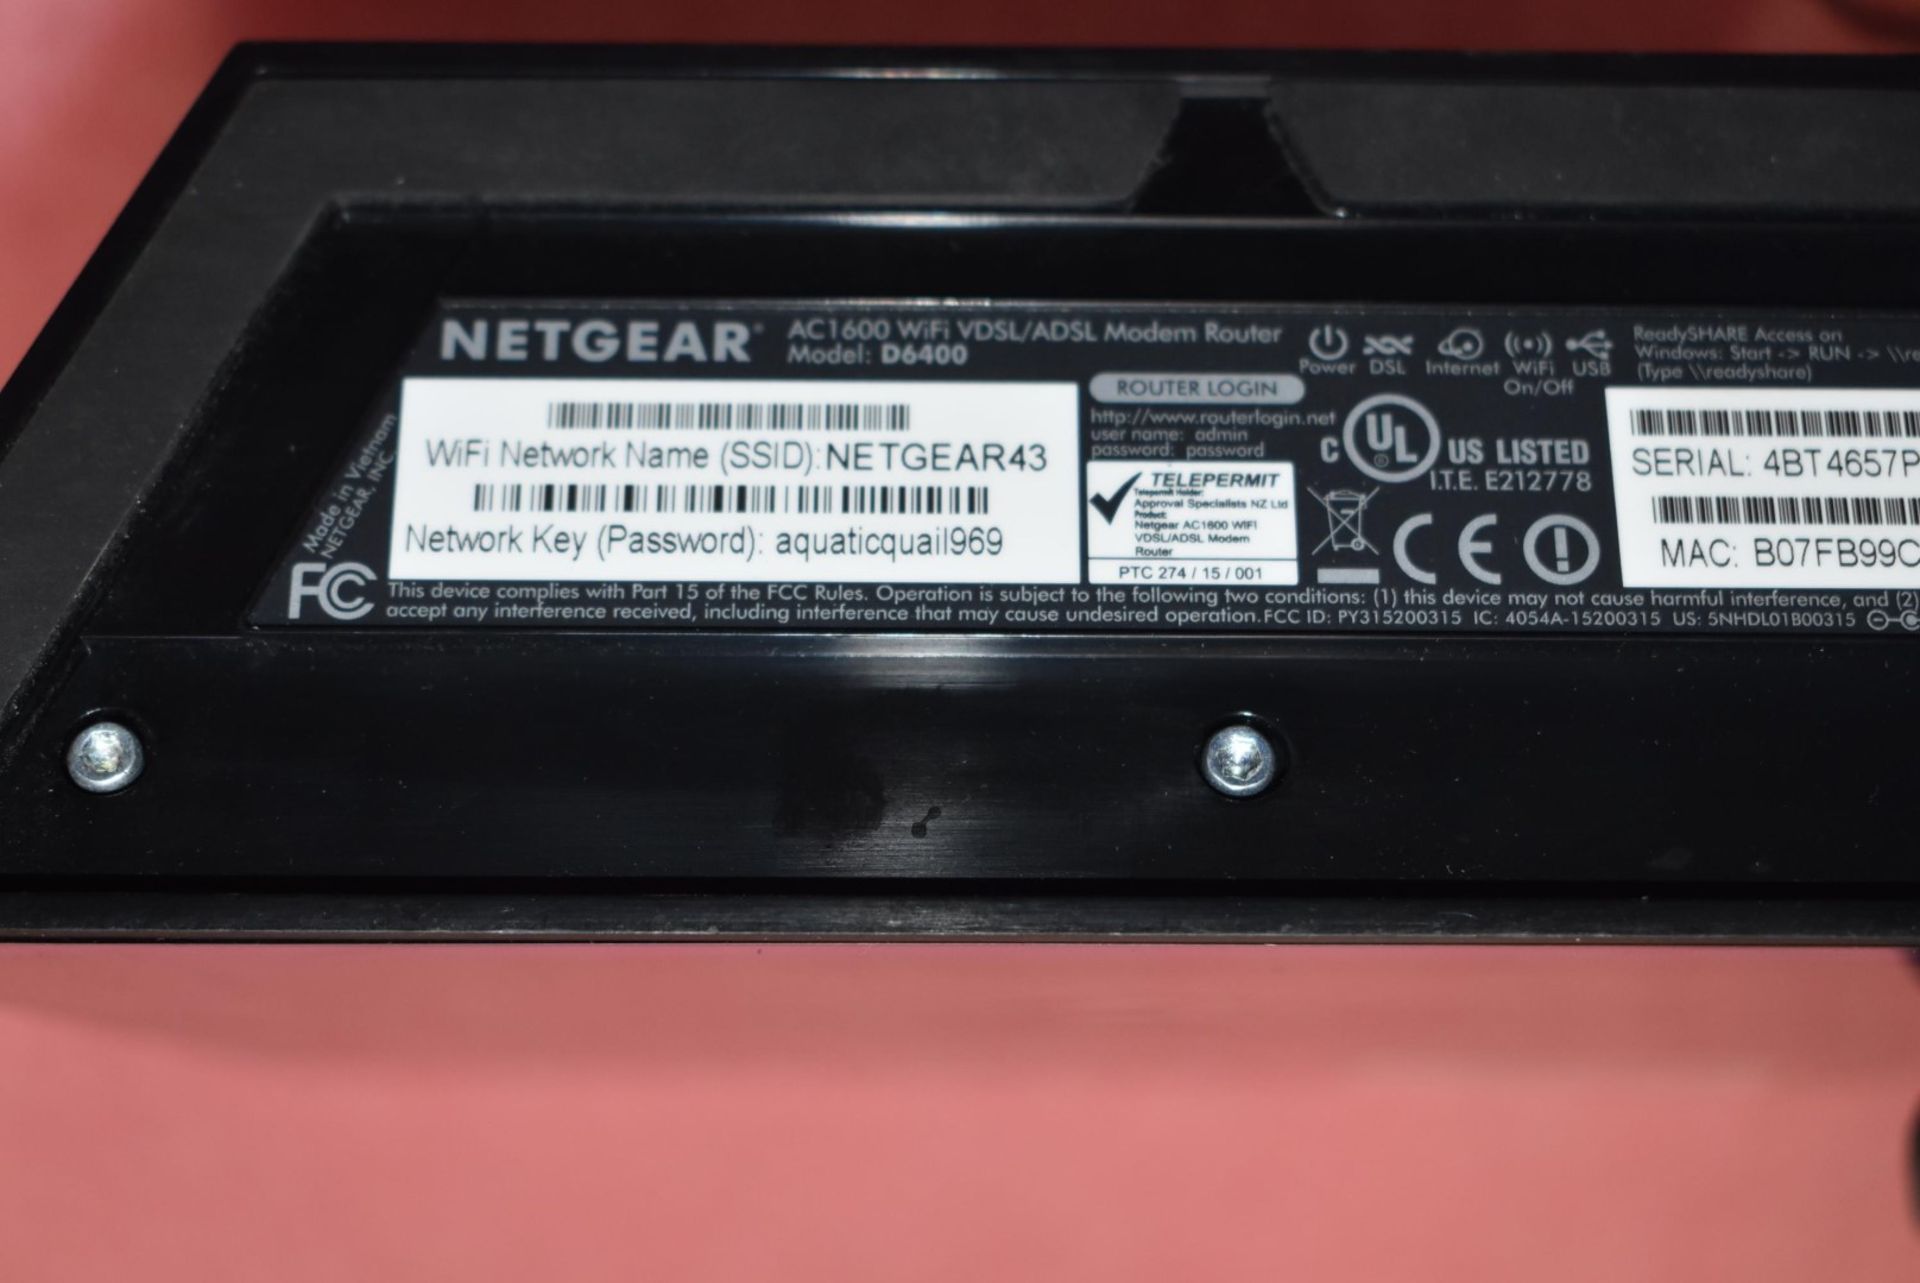 1 x Netgear D6400 AC1600 WiFi VDSL/ADSL Modem Router - Includes Power Adaptor - Bild 4 aus 4